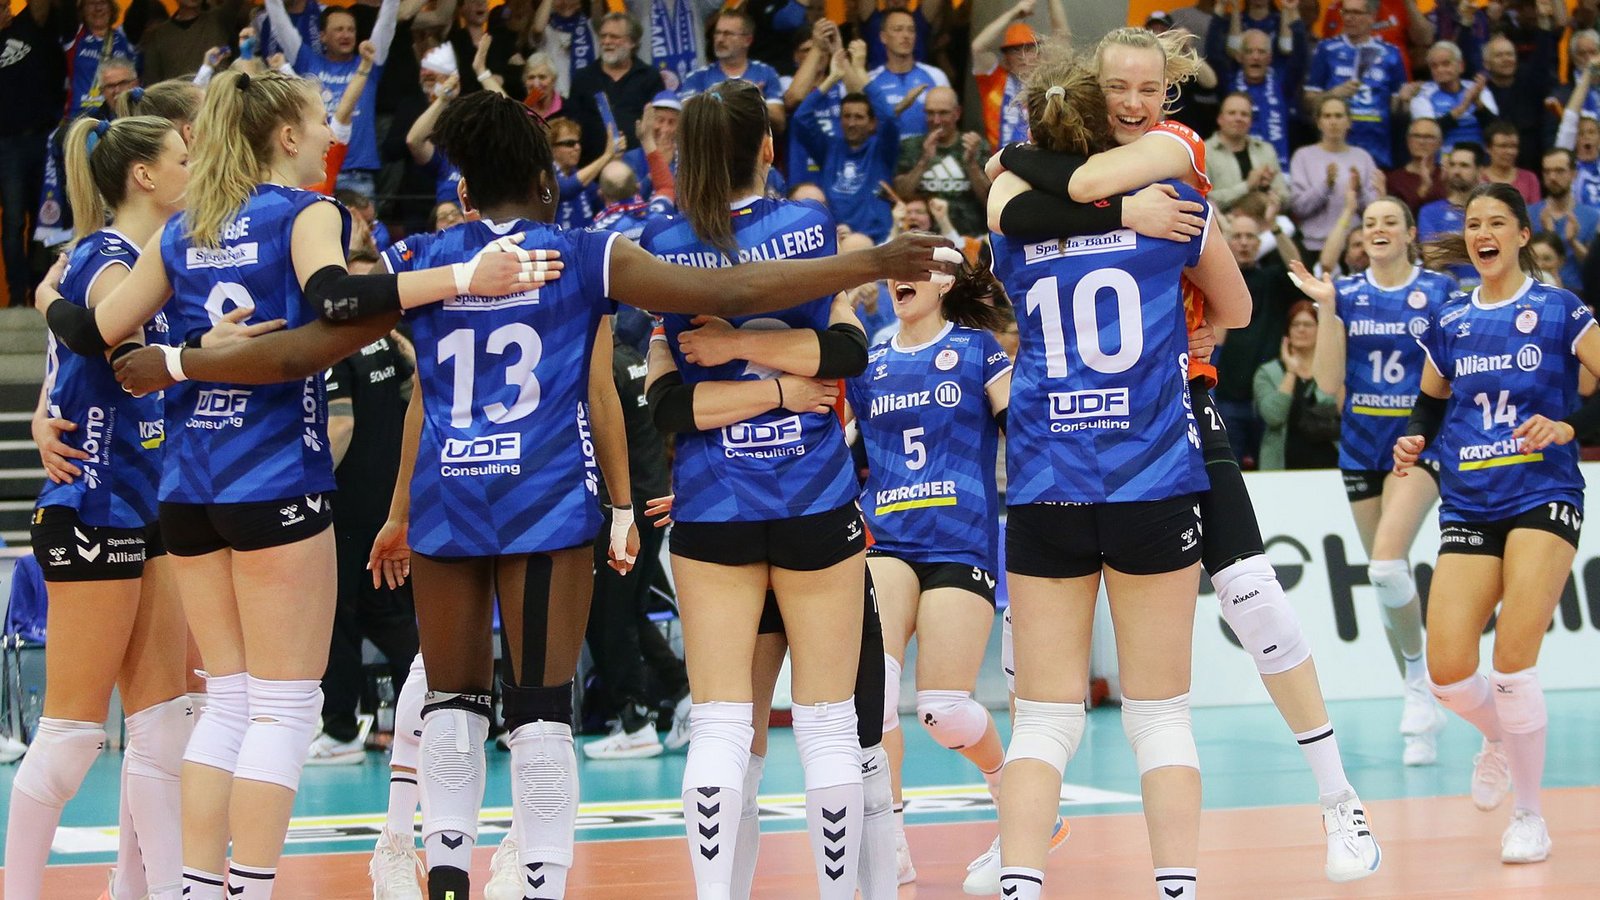 Jubel ohne Ende: Die Stuttgarter Volleyballerinnen haben in dieser Saison alle drei nationalen Titel gewonnen.Foto: Baumann/Hansjürgen Britsch